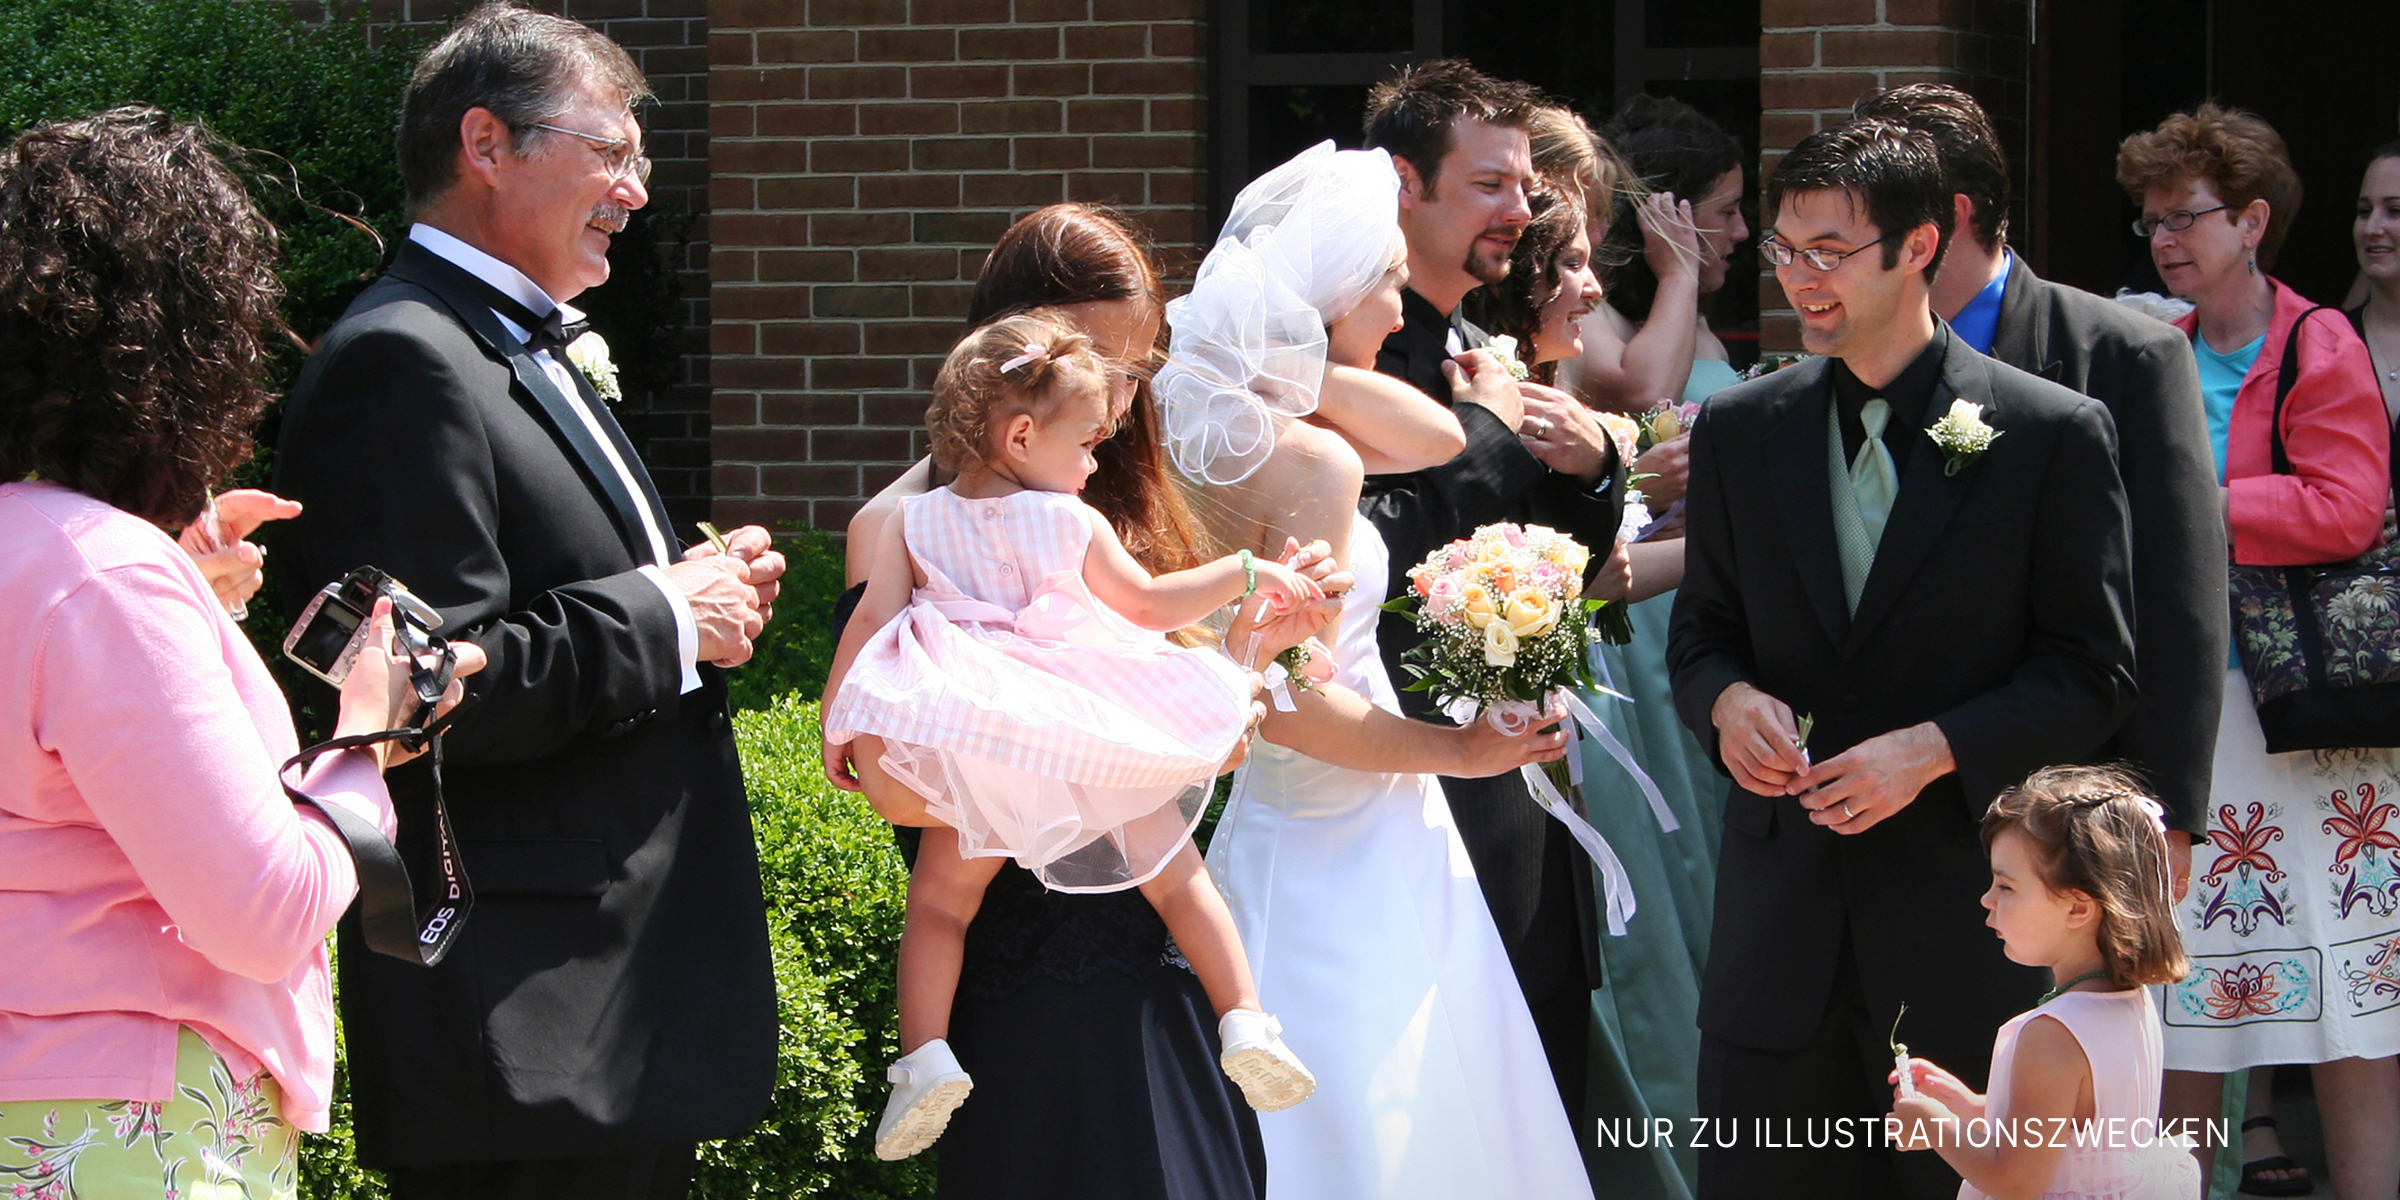 Hochzeitsgruppe im Freien | Quelle: Flickr / Gavin St. Ours (CC BY 2.0)